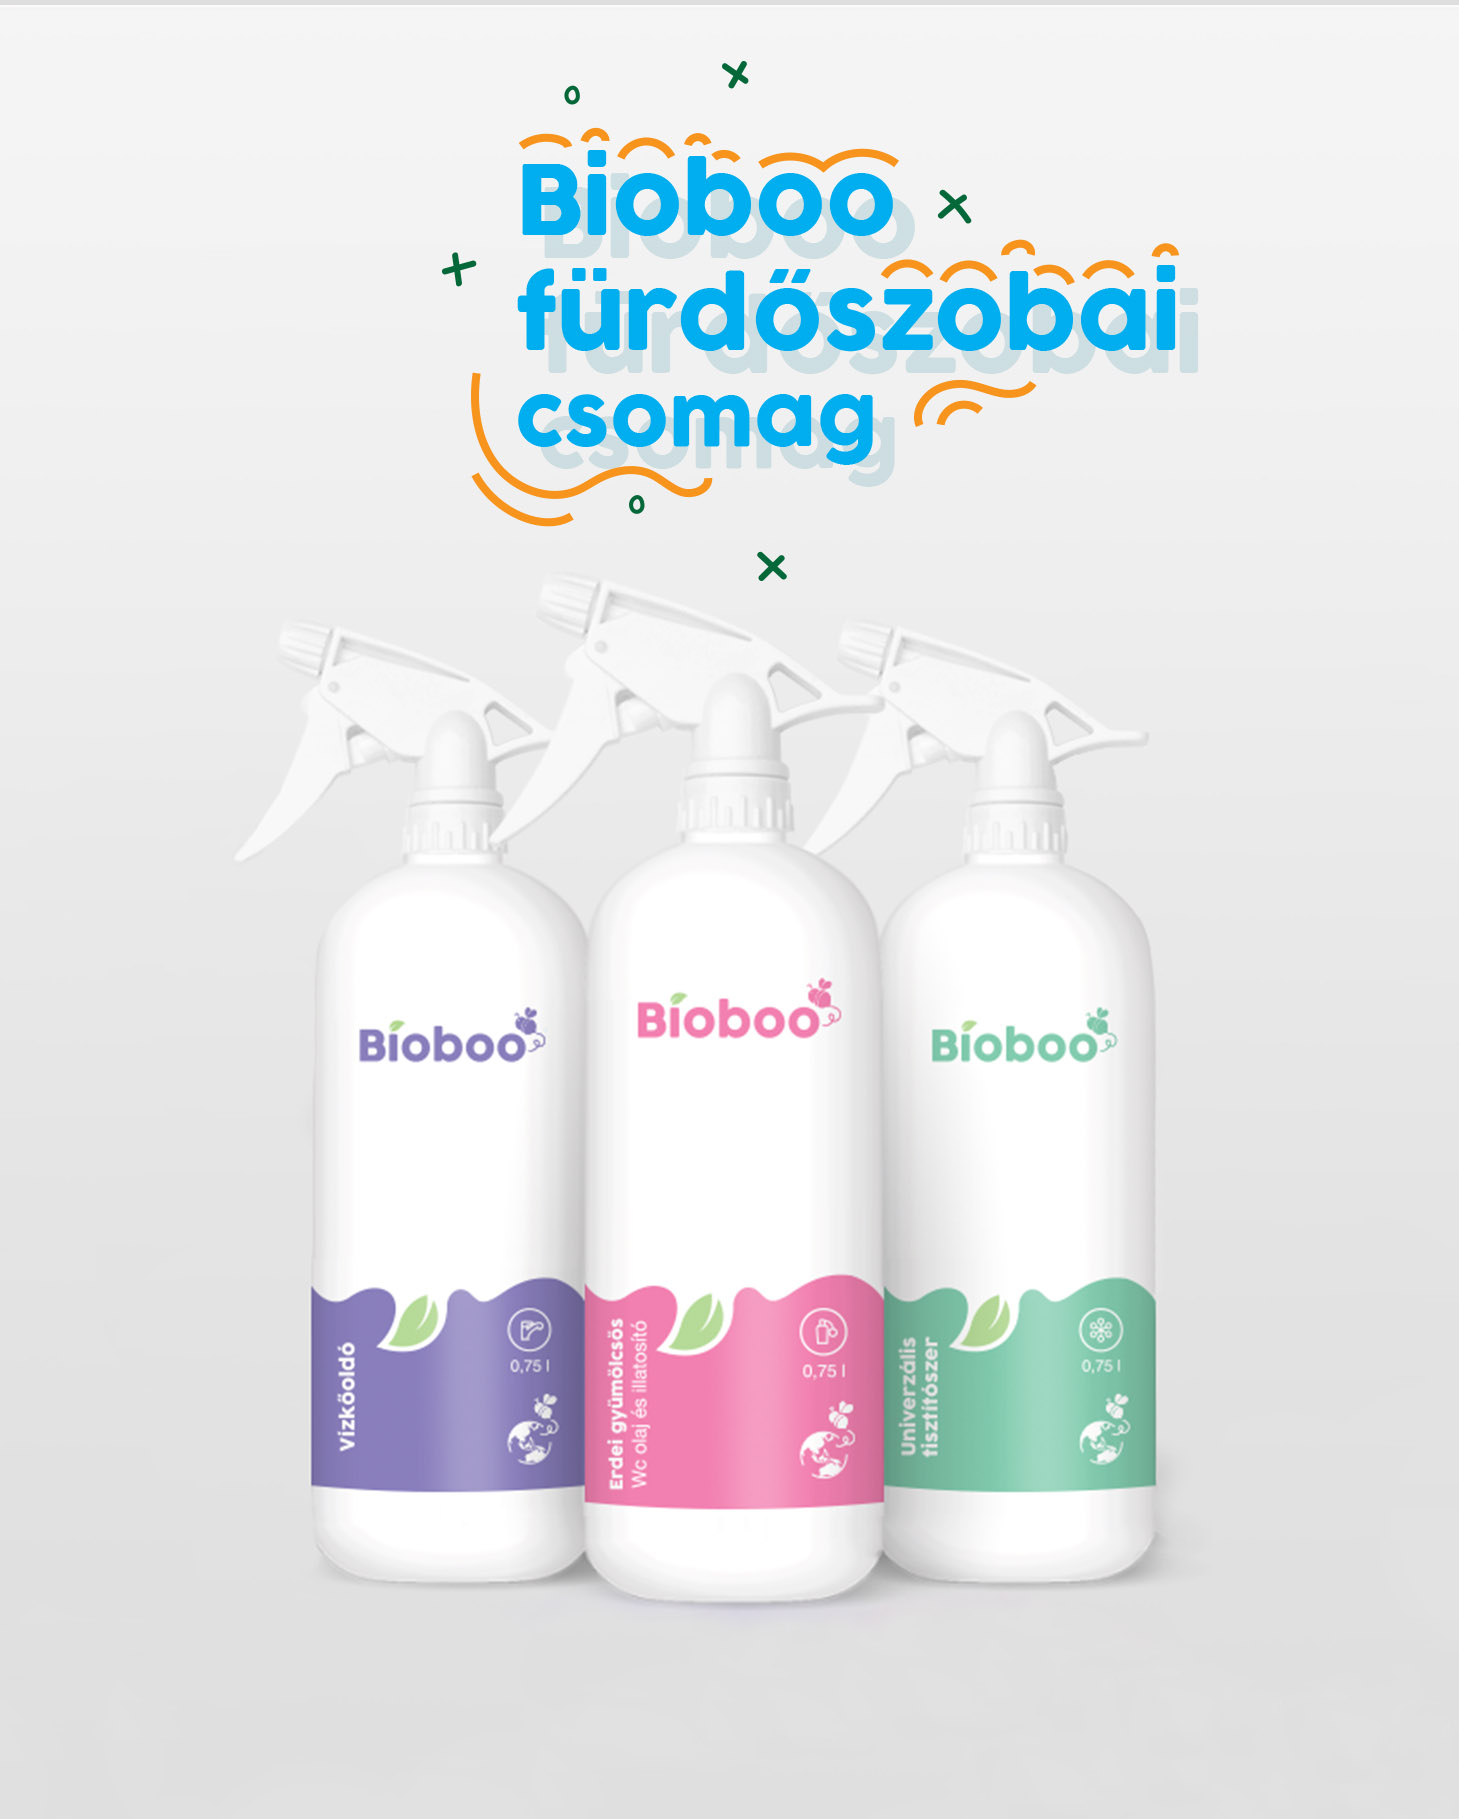 furdoszobai-tisztitoszer-csomag